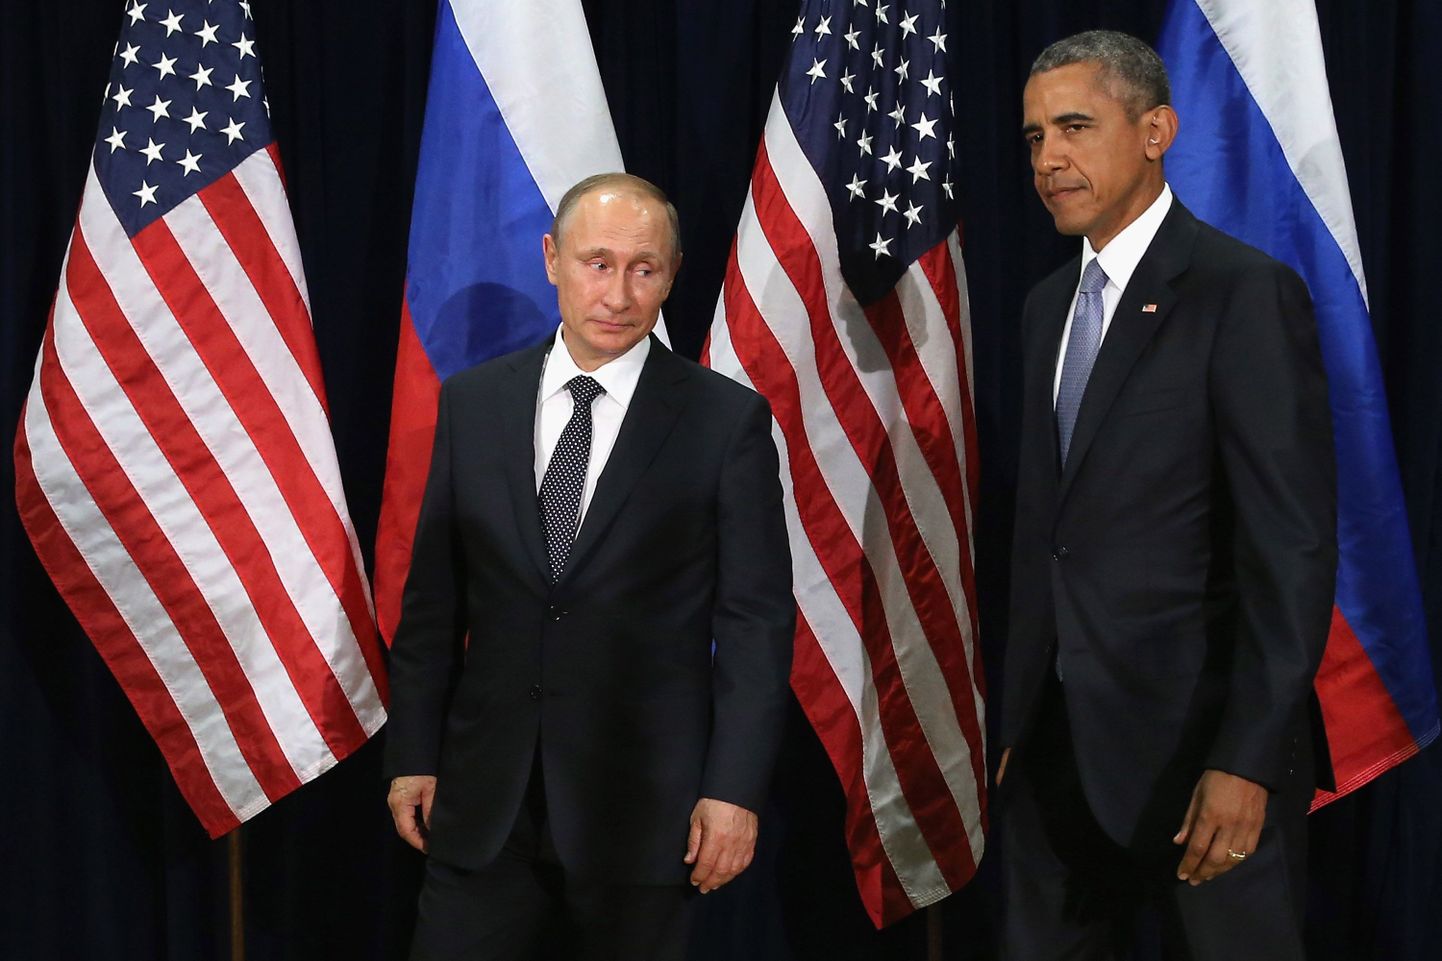 Vene president Vladimir Putin ja USA president Barack Obama eilse kohtumise eel fotograafidele poseerimas.